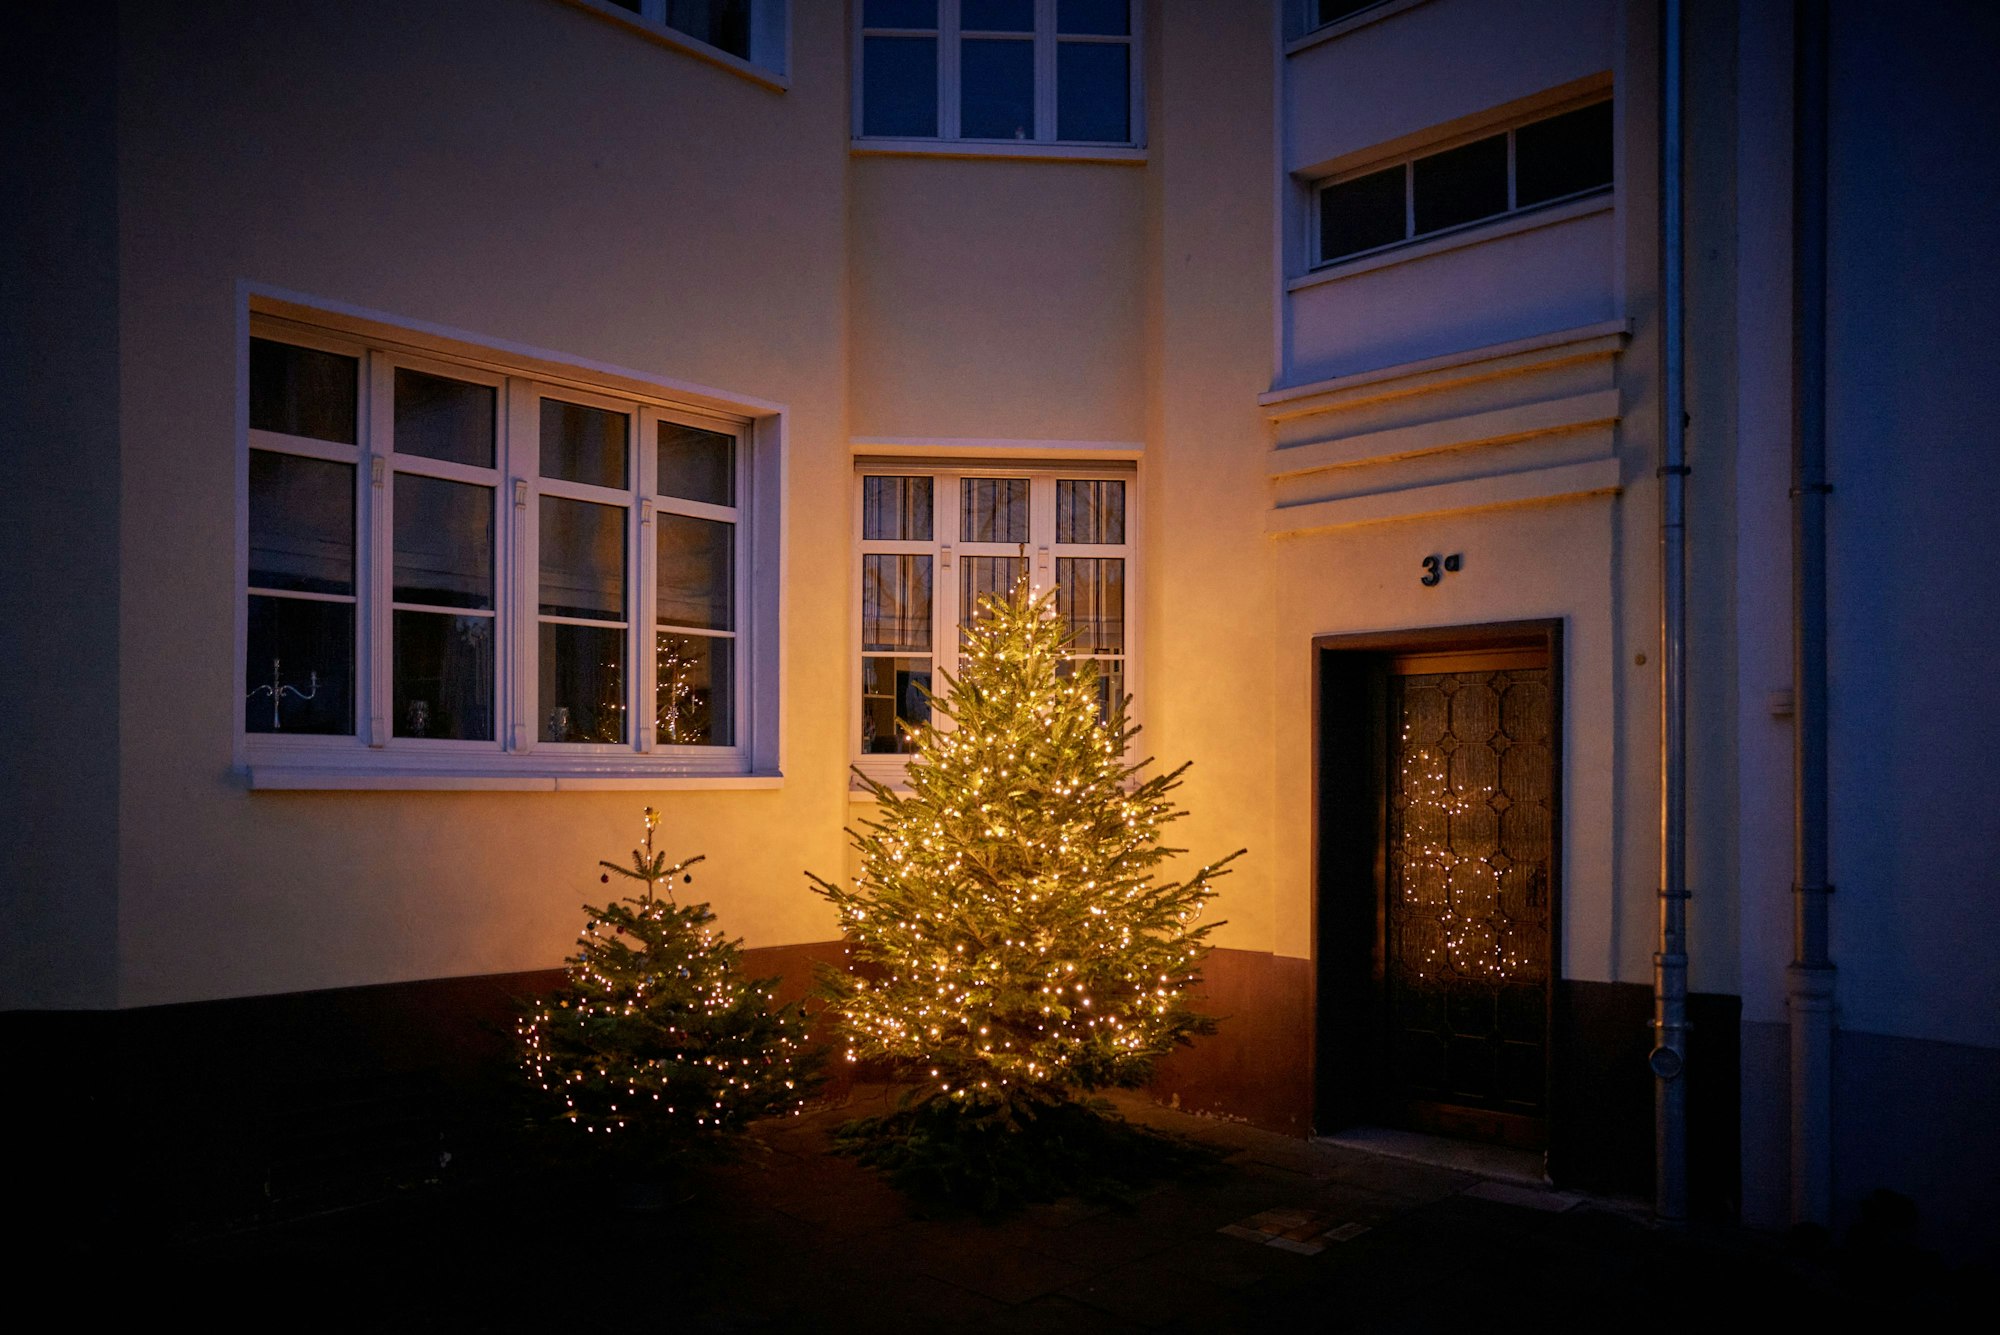 Zwei kleinere Weihnachtsbäume sind mit Lichterketten geschmückt und stehen im Dunklen vor einem Hauseingang.